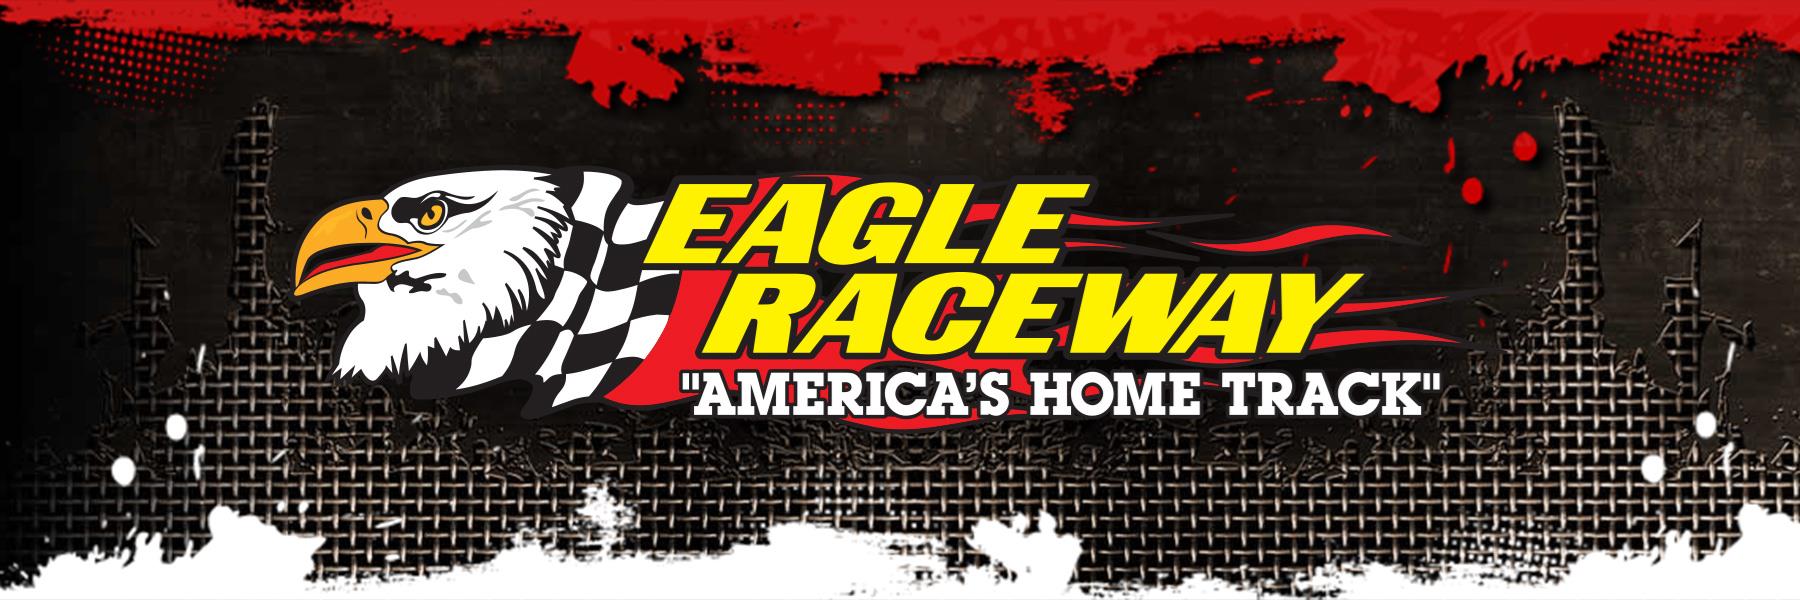 8/1/2015 - Eagle Raceway